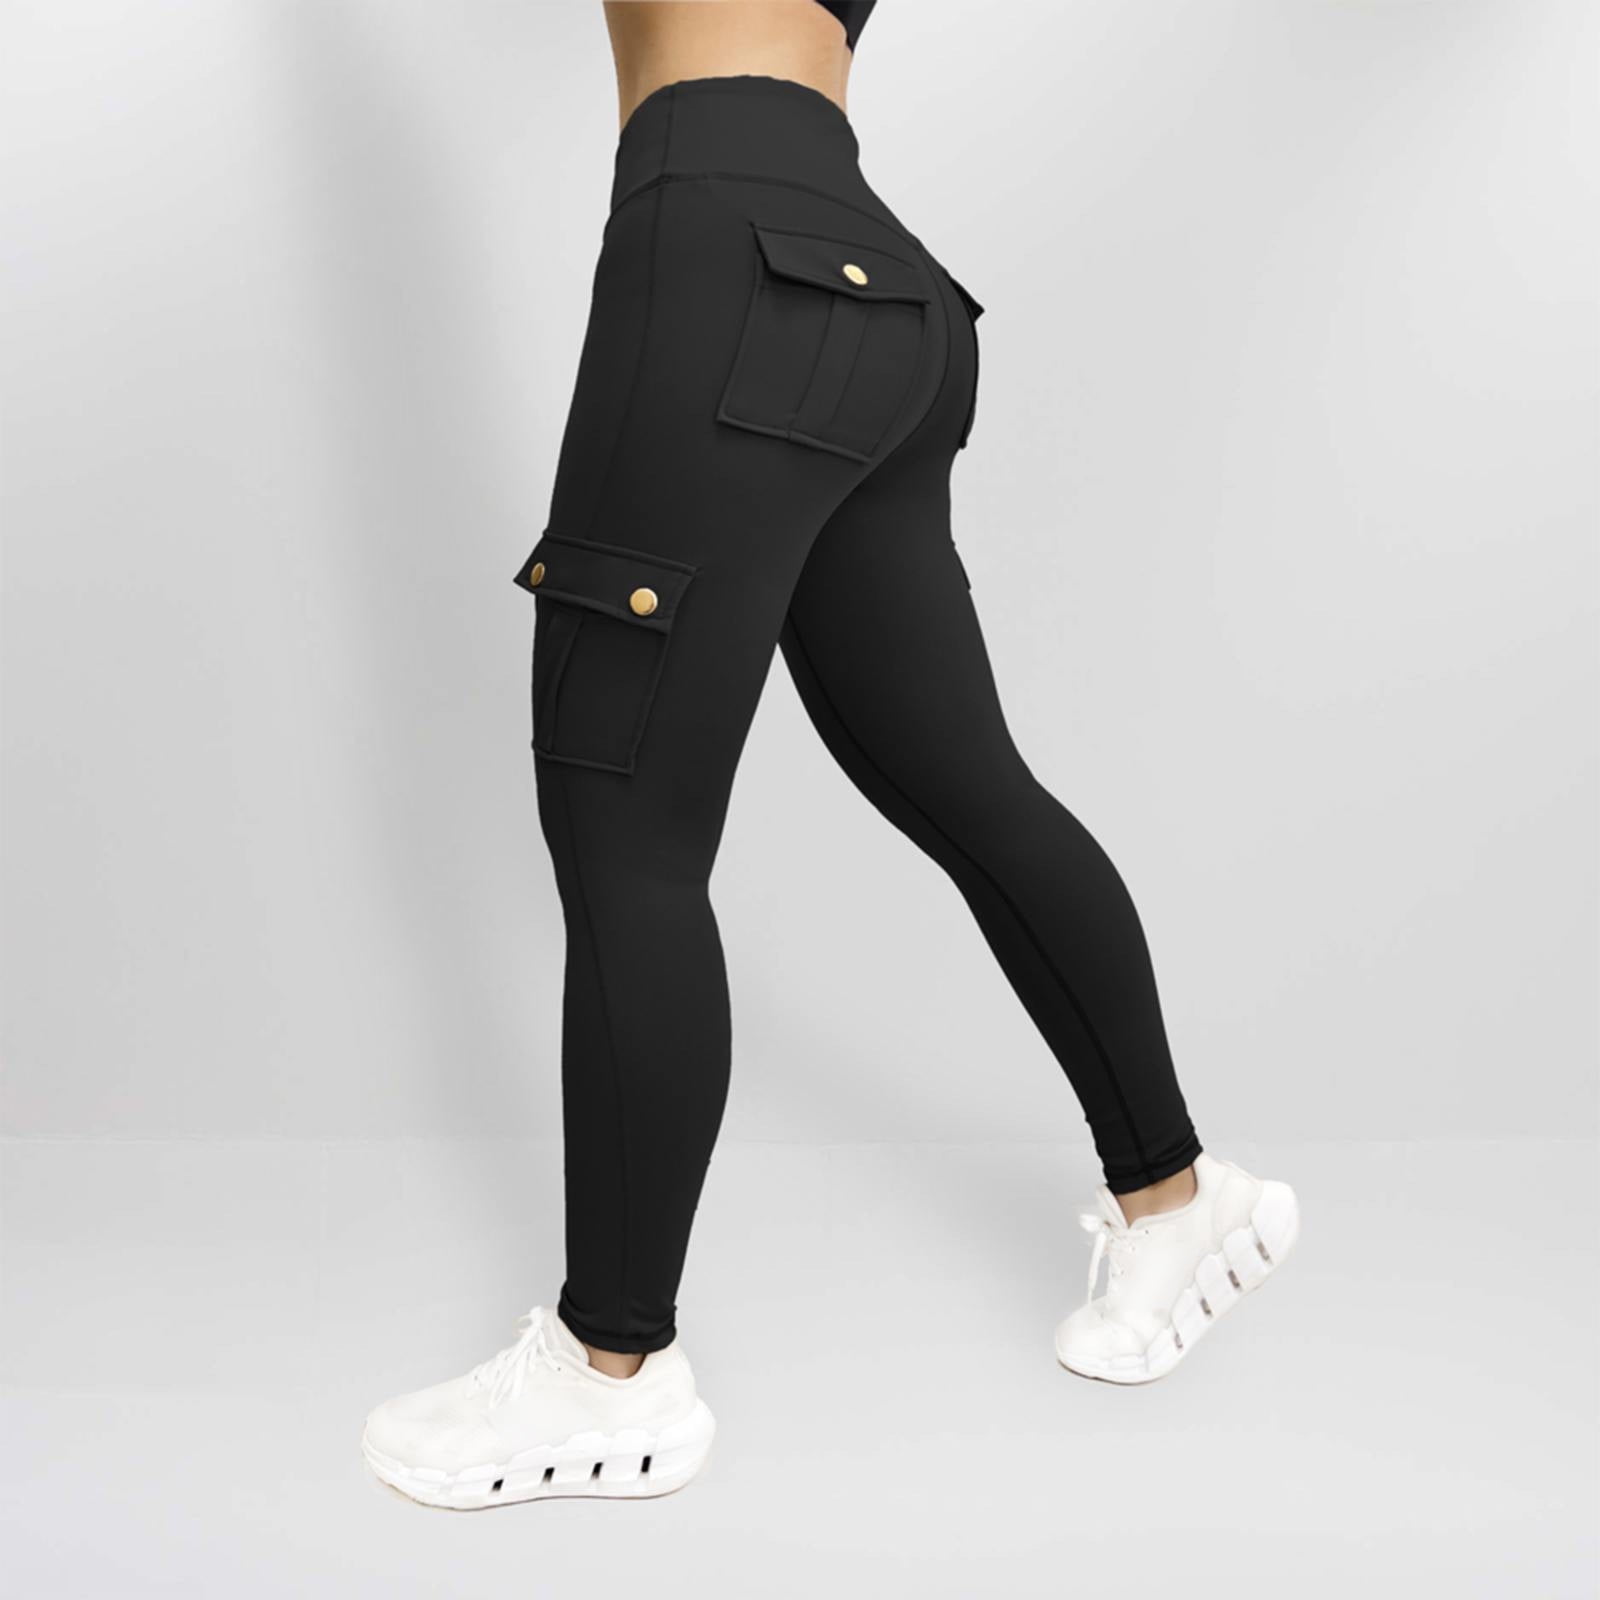 High Waist Seamless Butt Contour Leggings For Women – Zioccie